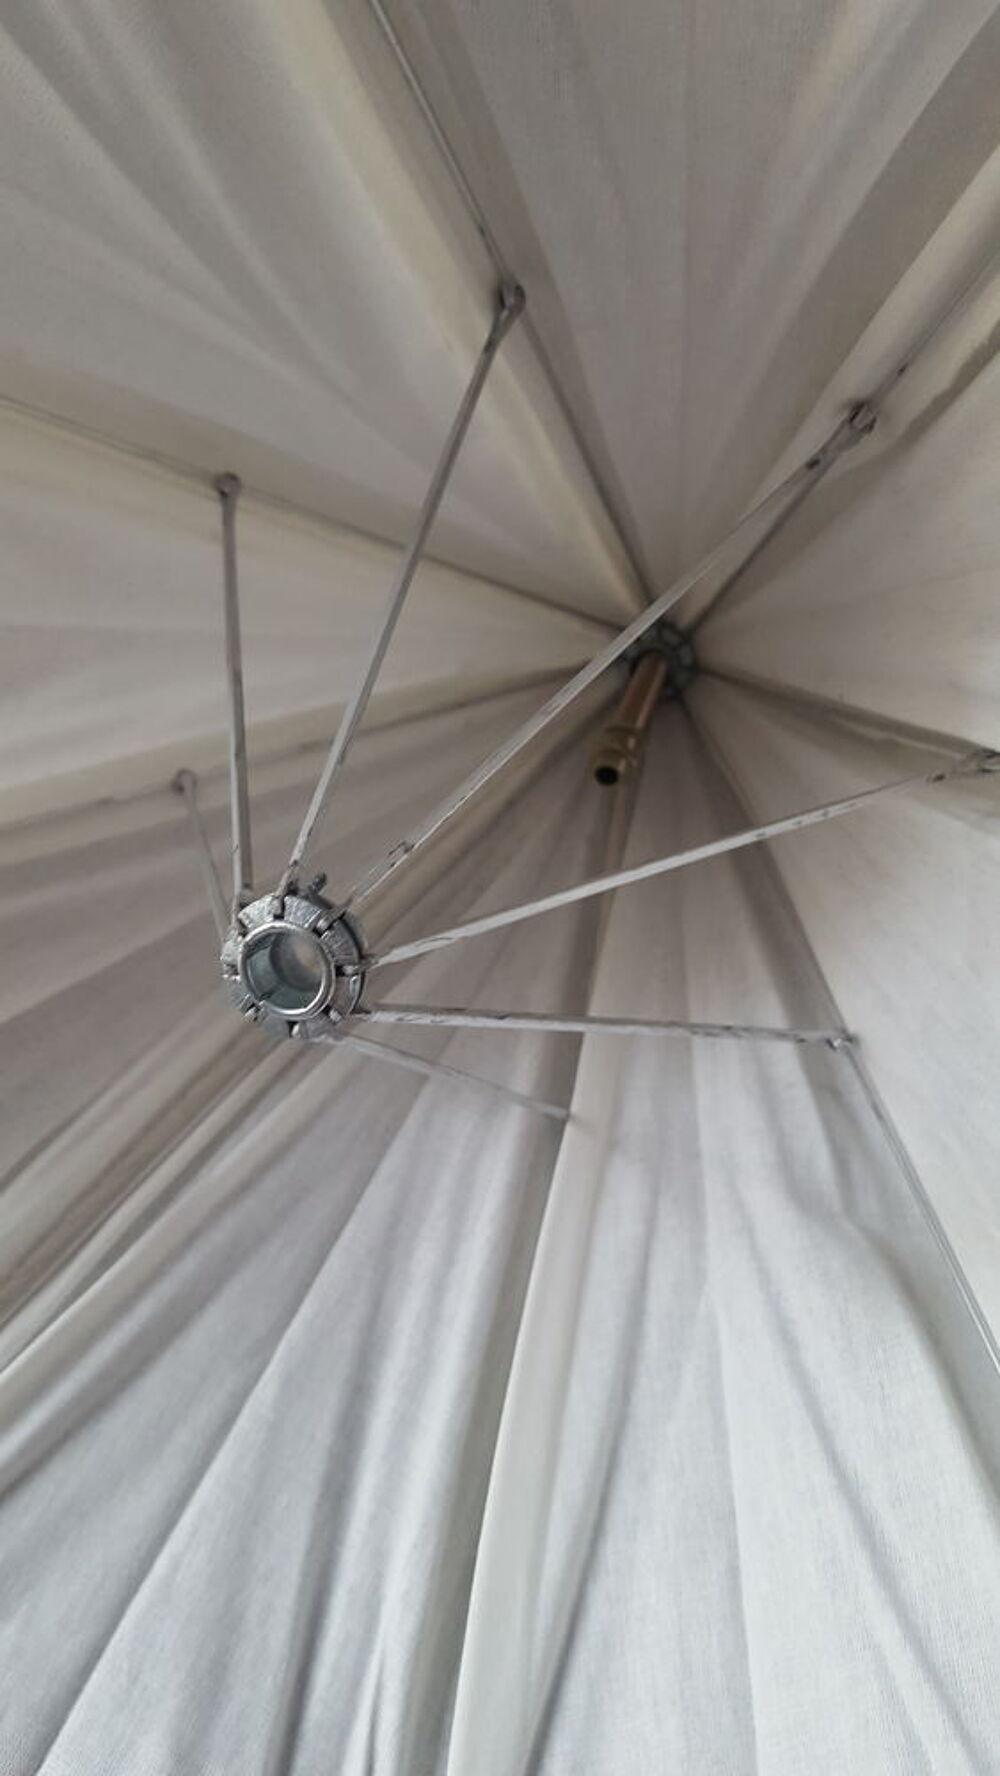 luminaire blanc en forme de parapluie
Dcoration